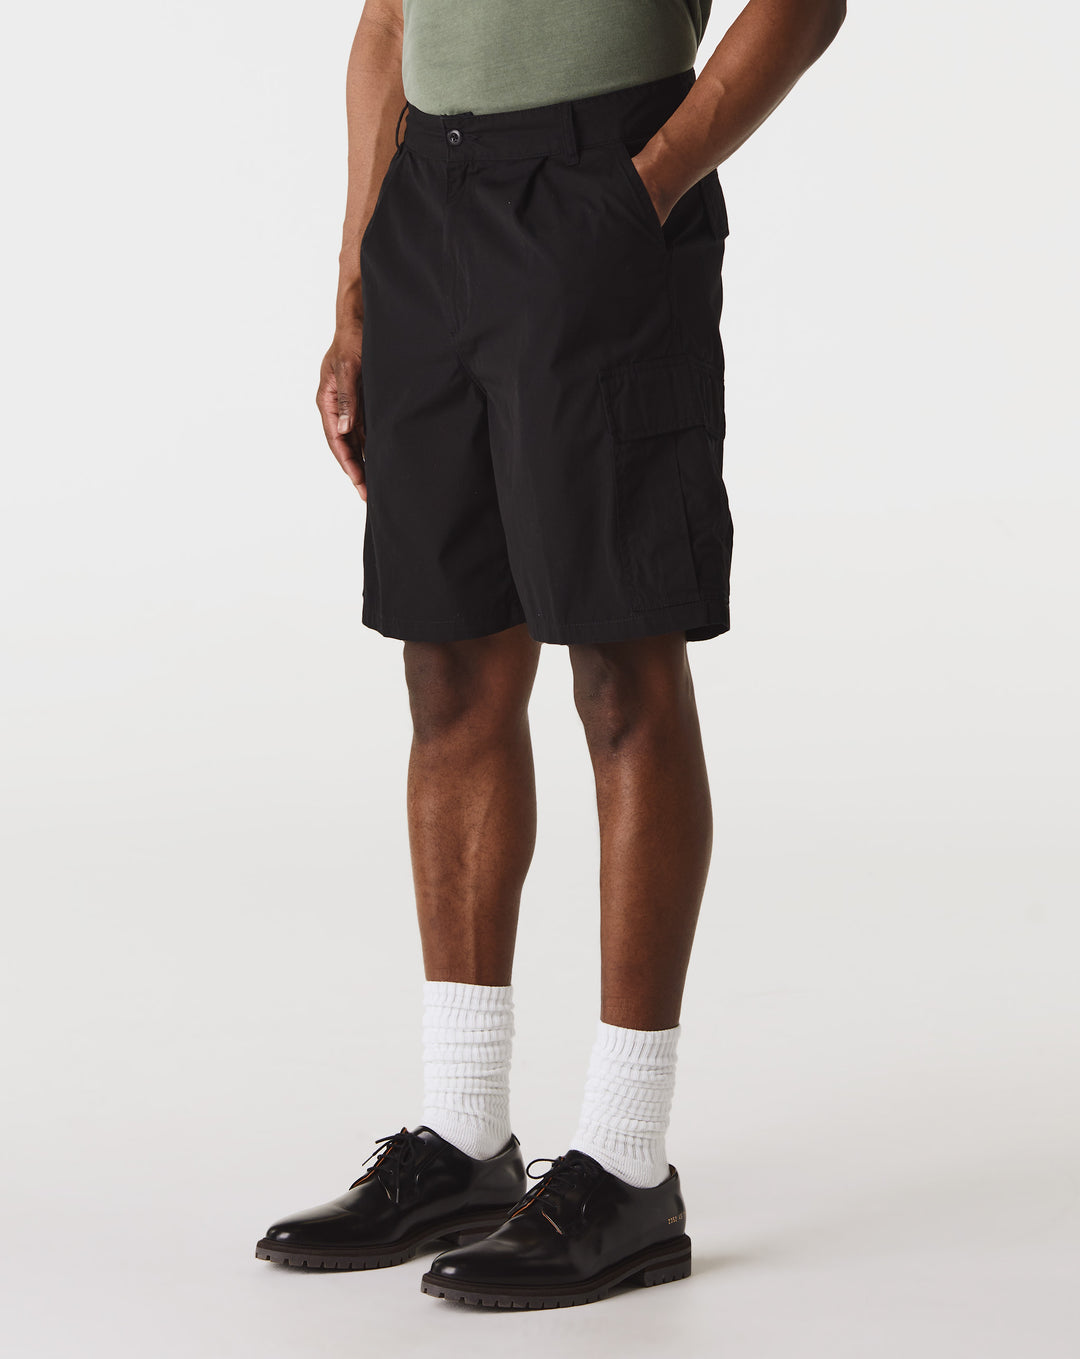 Carhartt WIP That cole Cargo Shorts  - Cheap Urlfreeze Jordan outlet